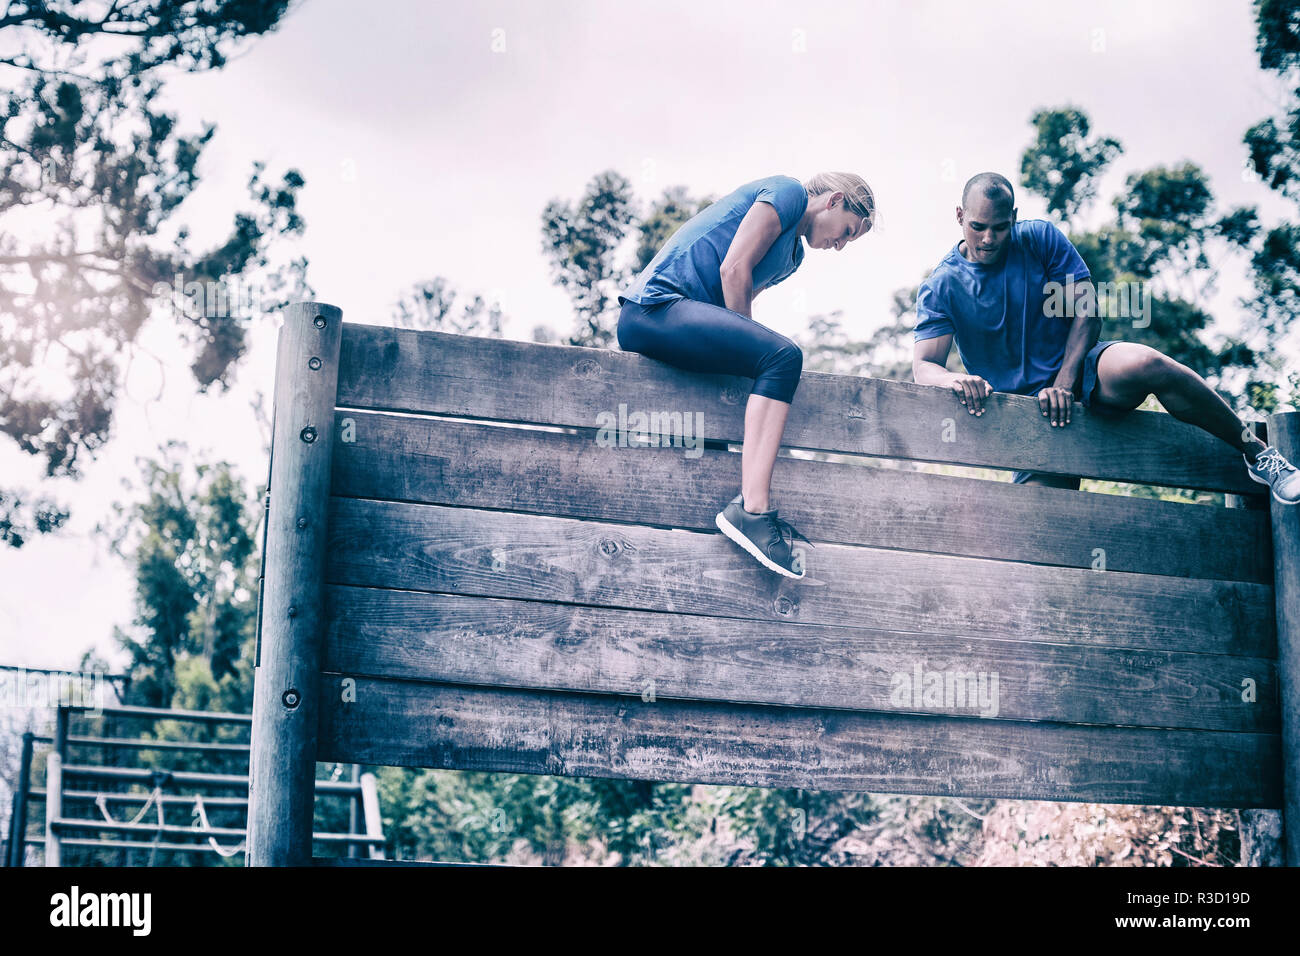 Passen Mann und Frau klettern auf Holz Wand während des Parcours Stockfoto